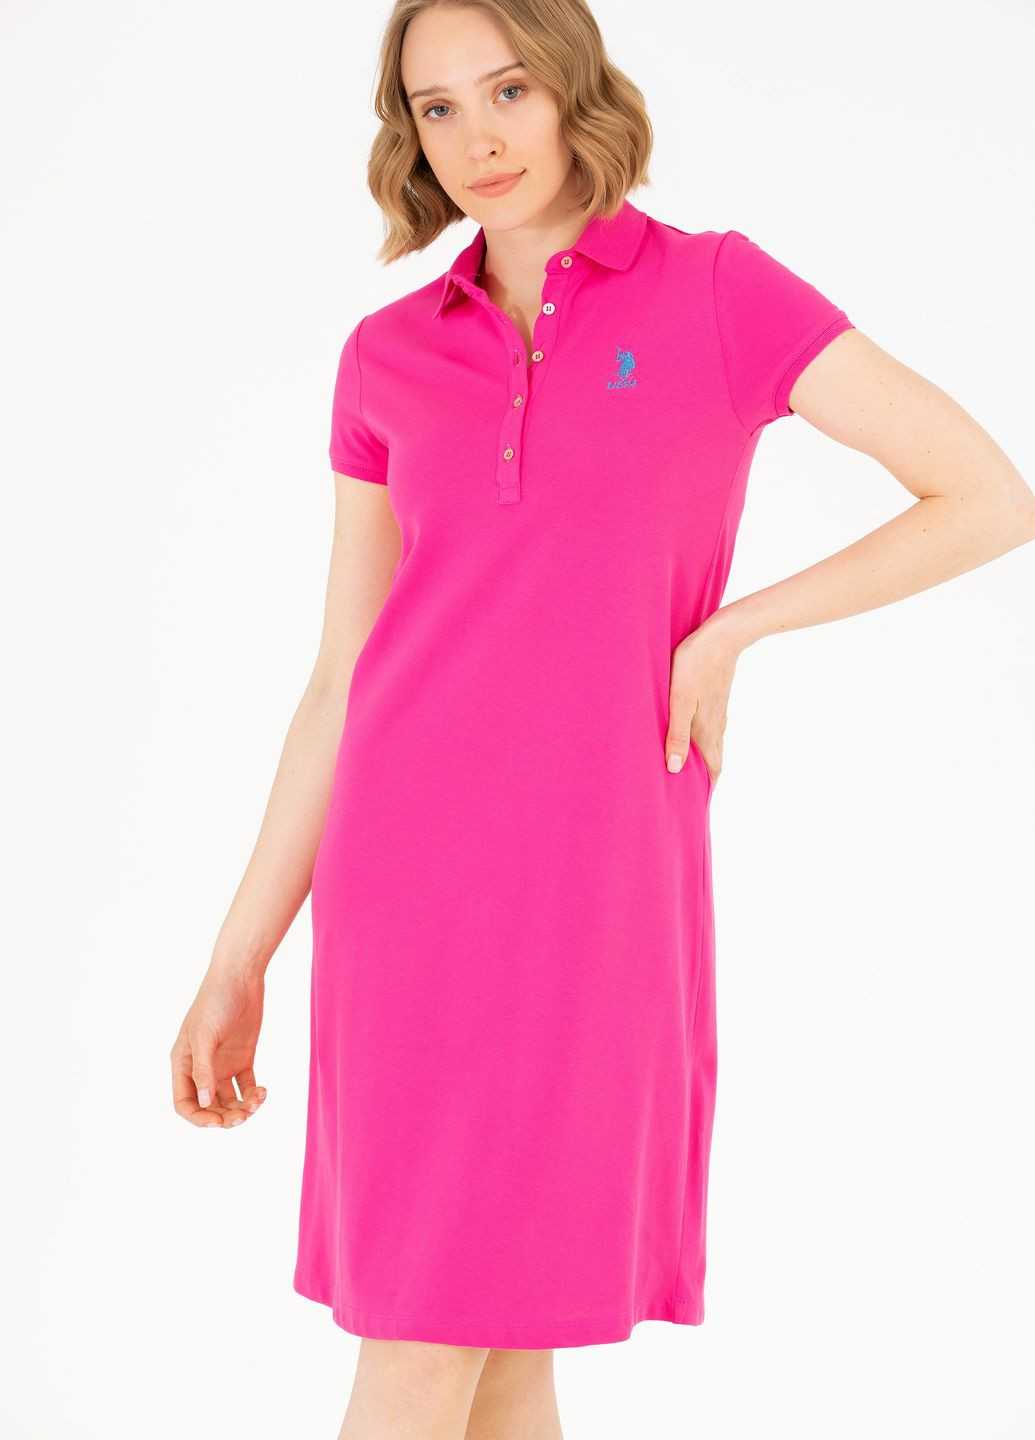 Кислотно-розовое платье женское U.S. Polo Assn.